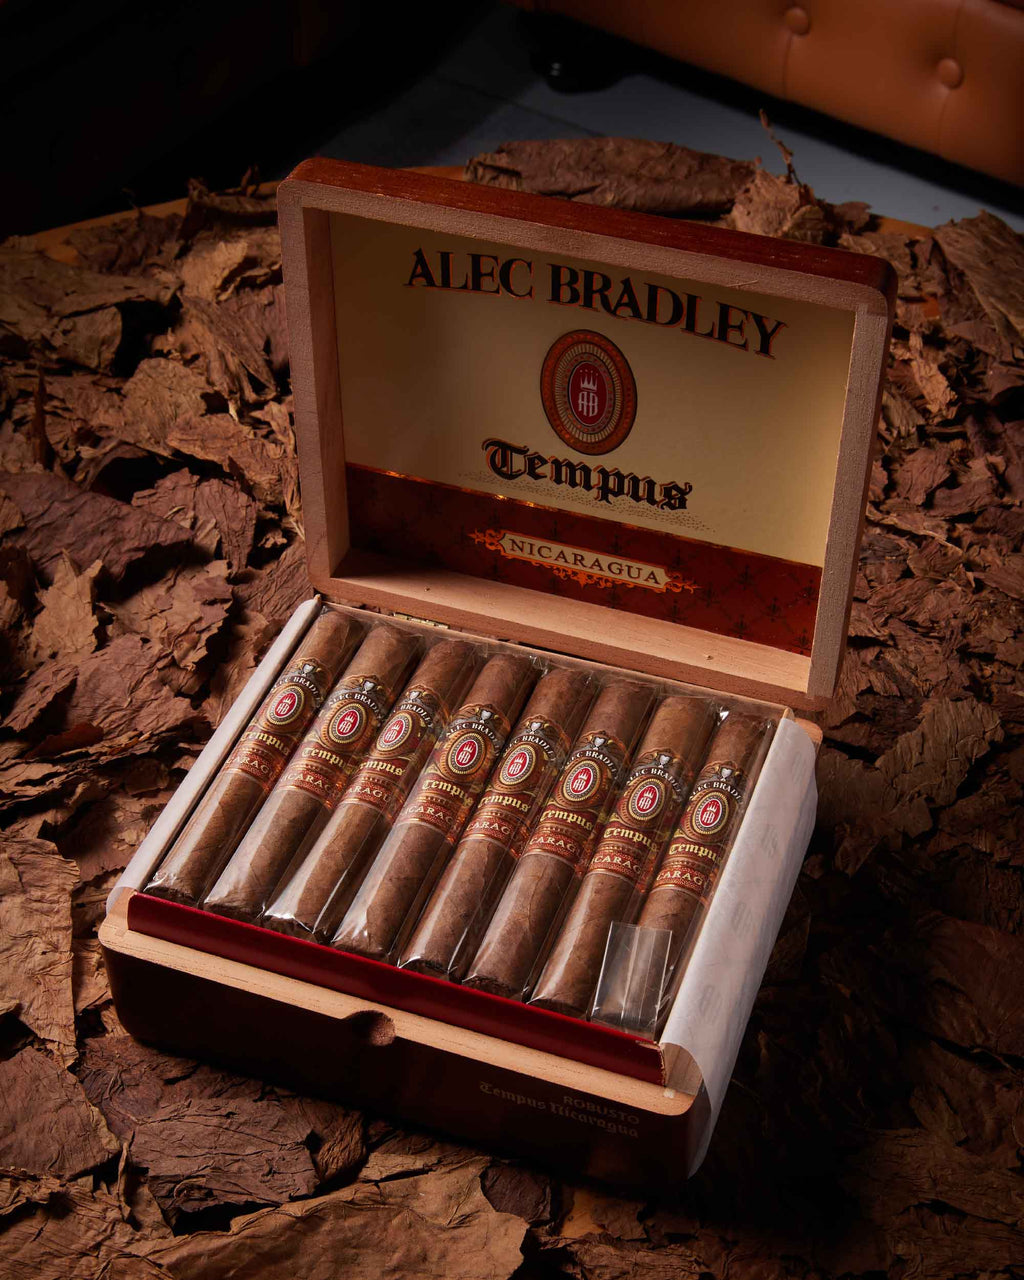 Alec Bradley Tempus Cigars